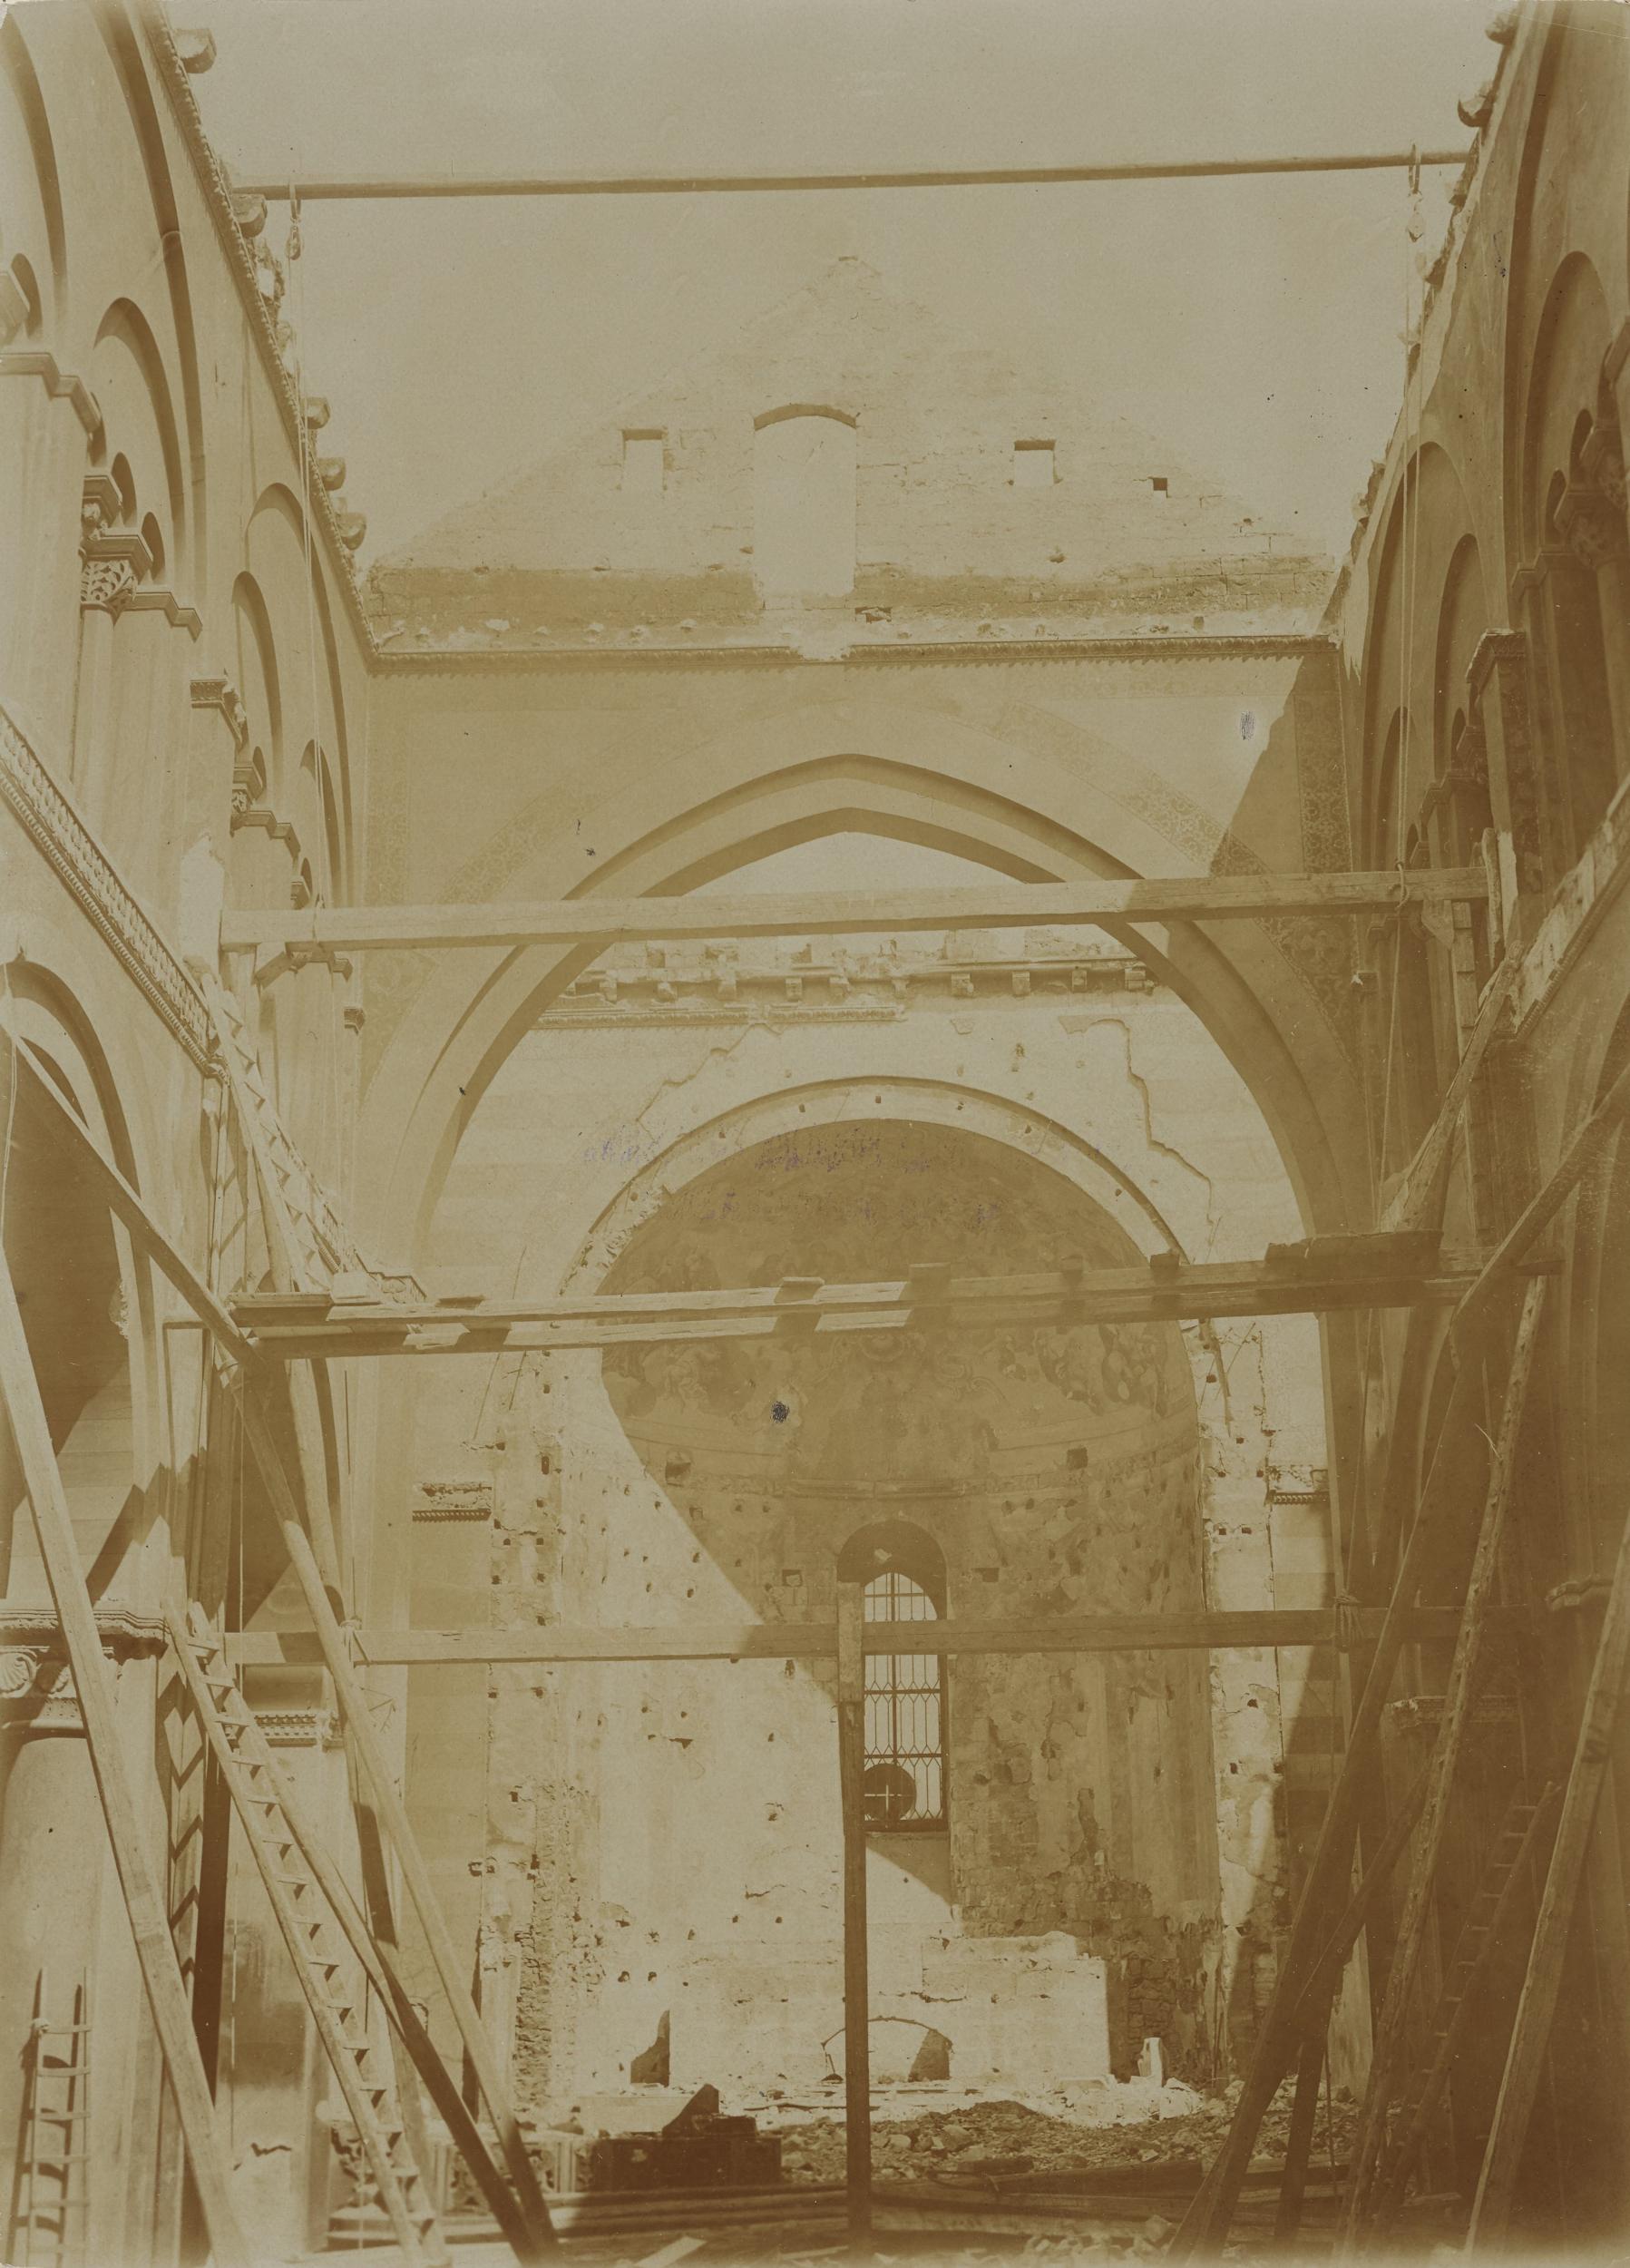 Fotografo non identificato, Conversano - Cattedrale, interno, navata sinistra, dopo incendio del 1911, 1901-1910, aristotipo, MPI155335